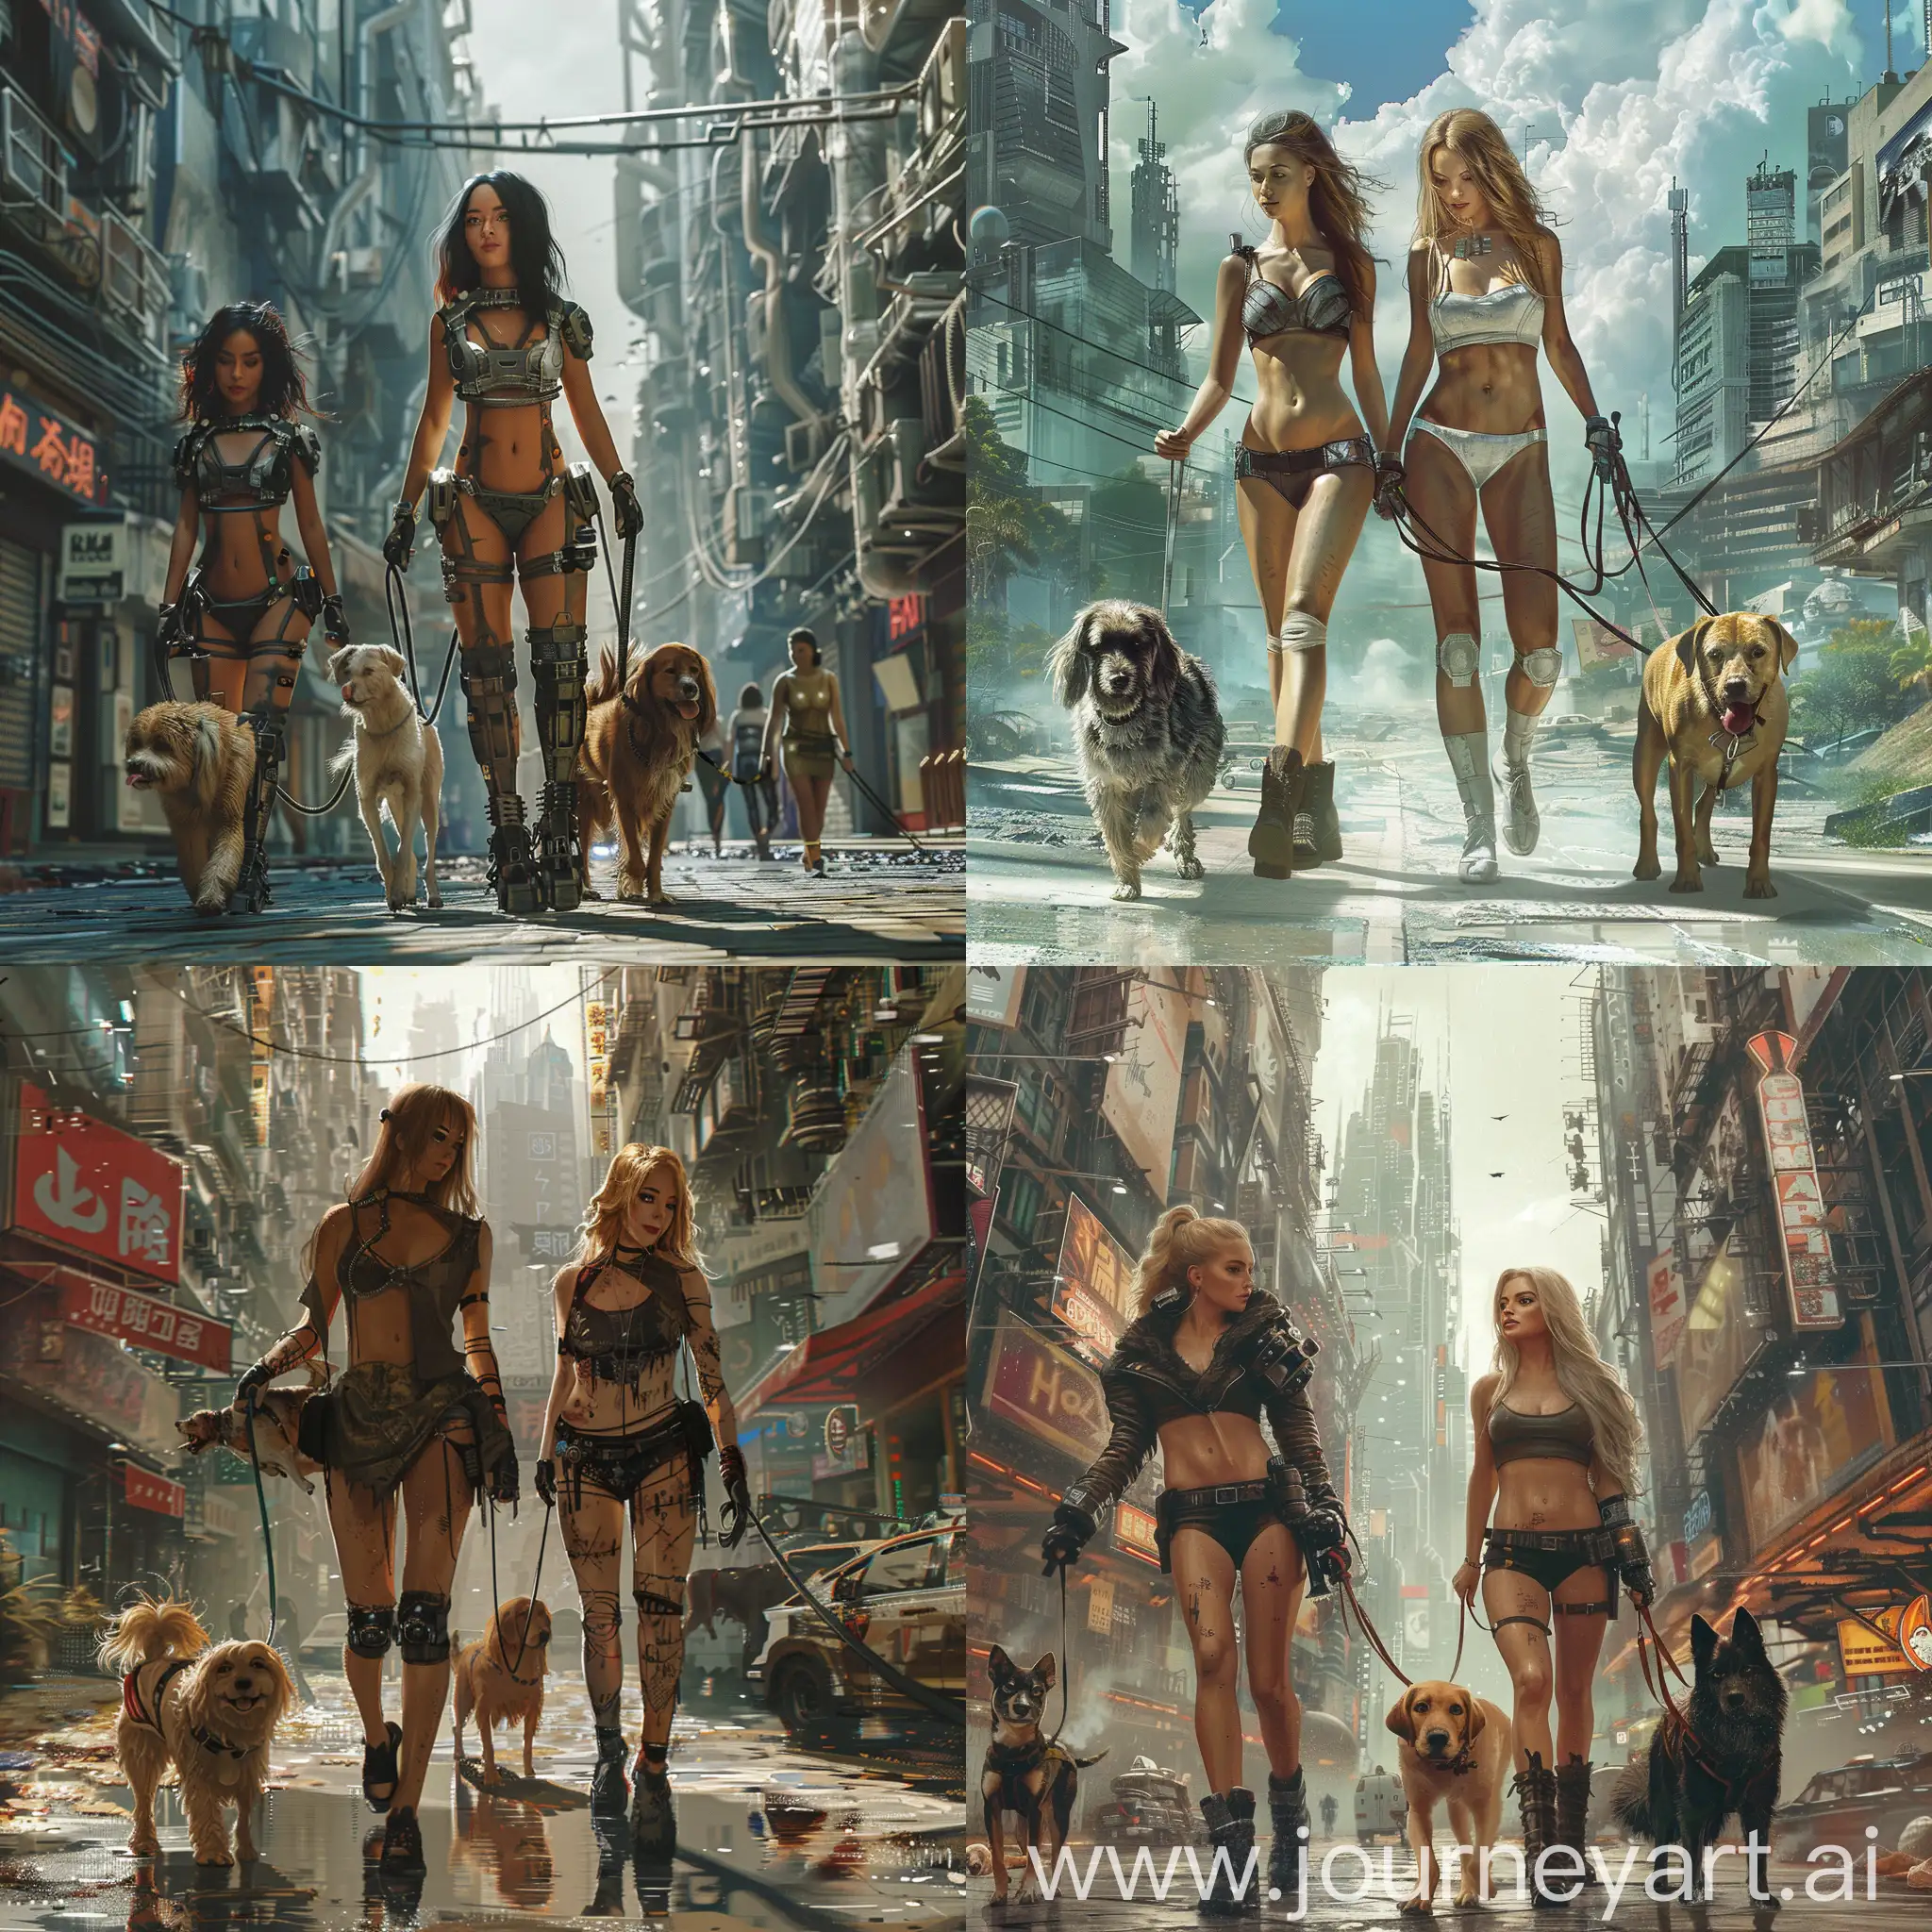 dystopian city, beautiful  women, walking dogs